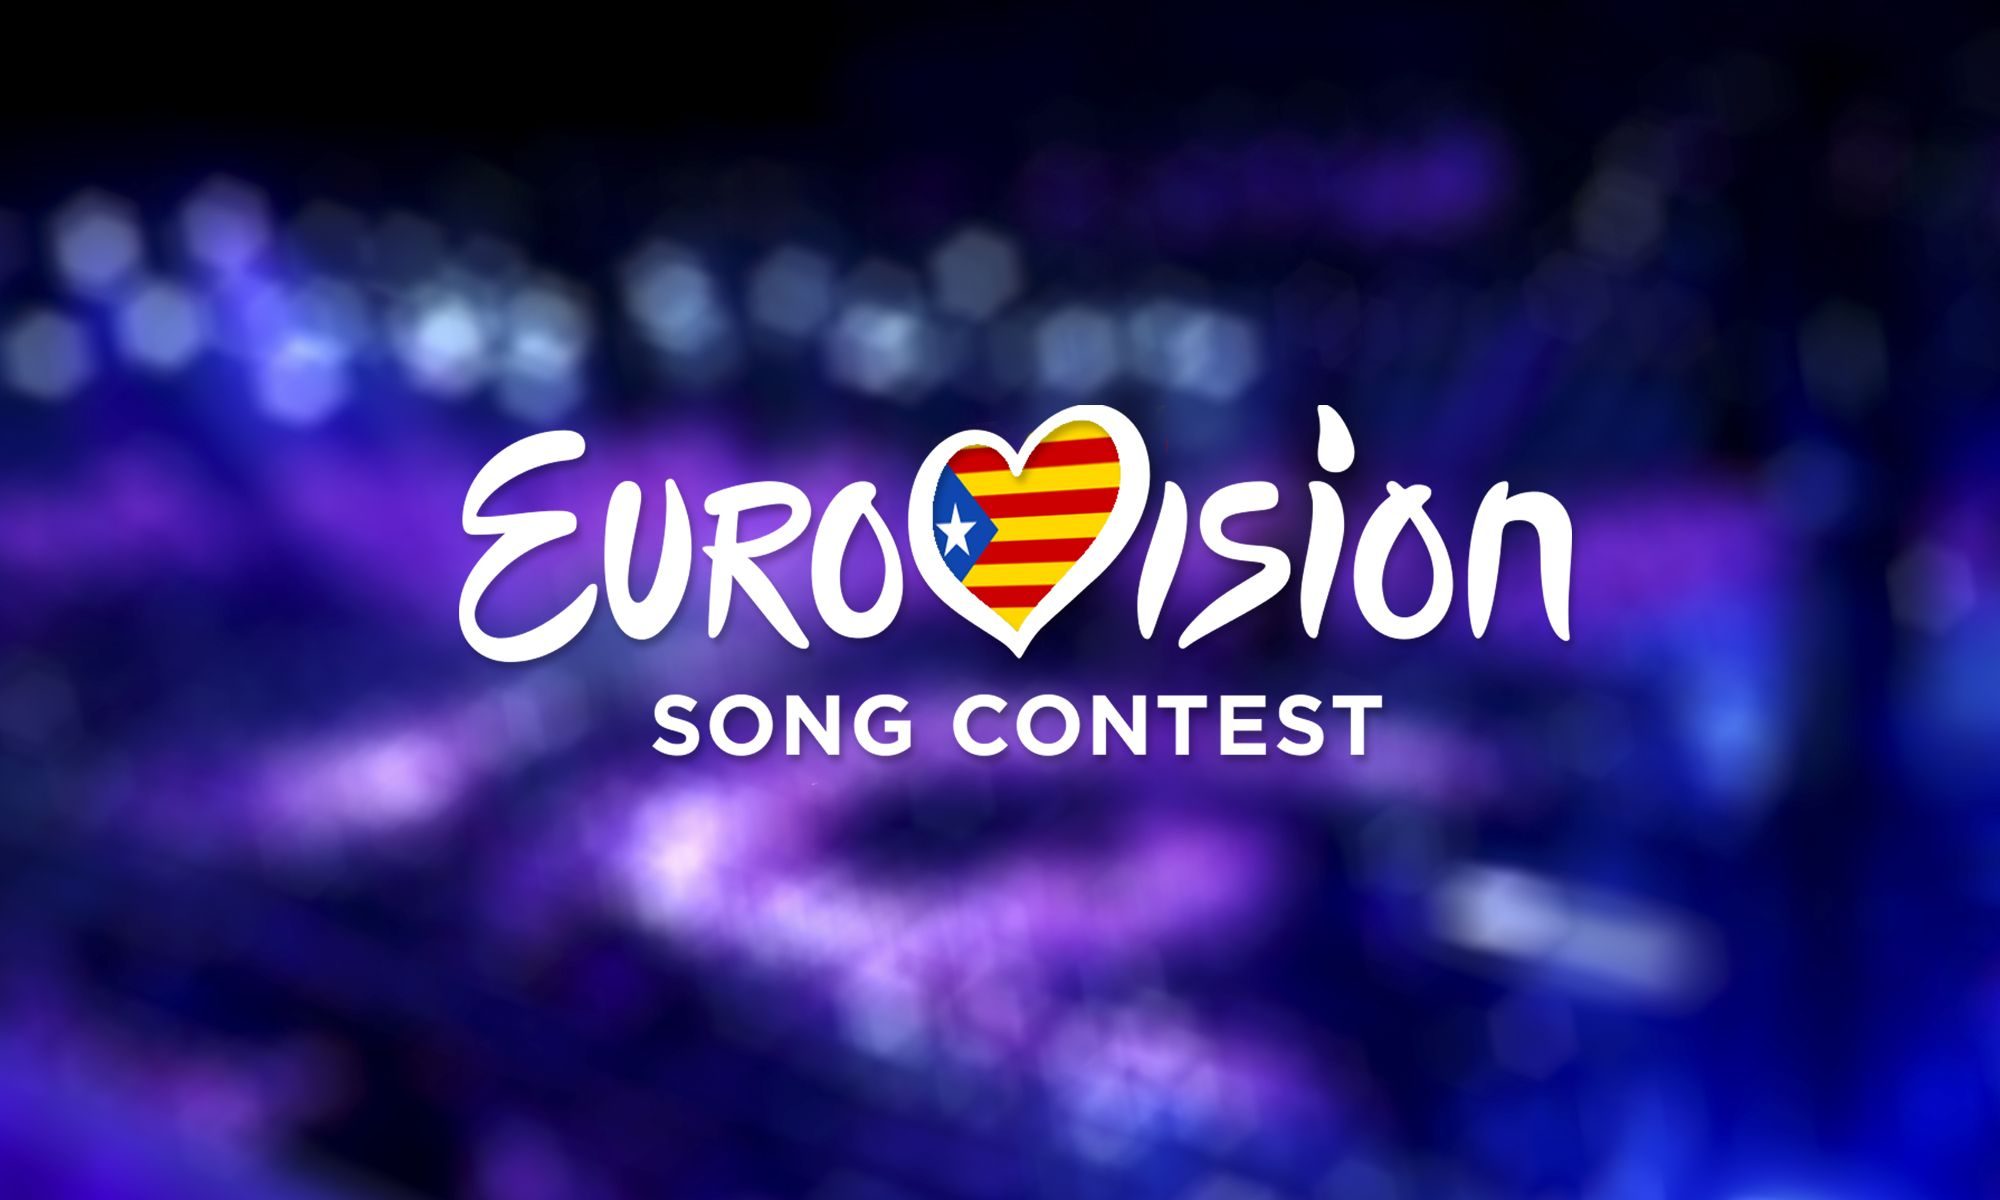 mega-cabecera__24092015_064937_logo_eurovisionparentesiscatalunyaparentesis